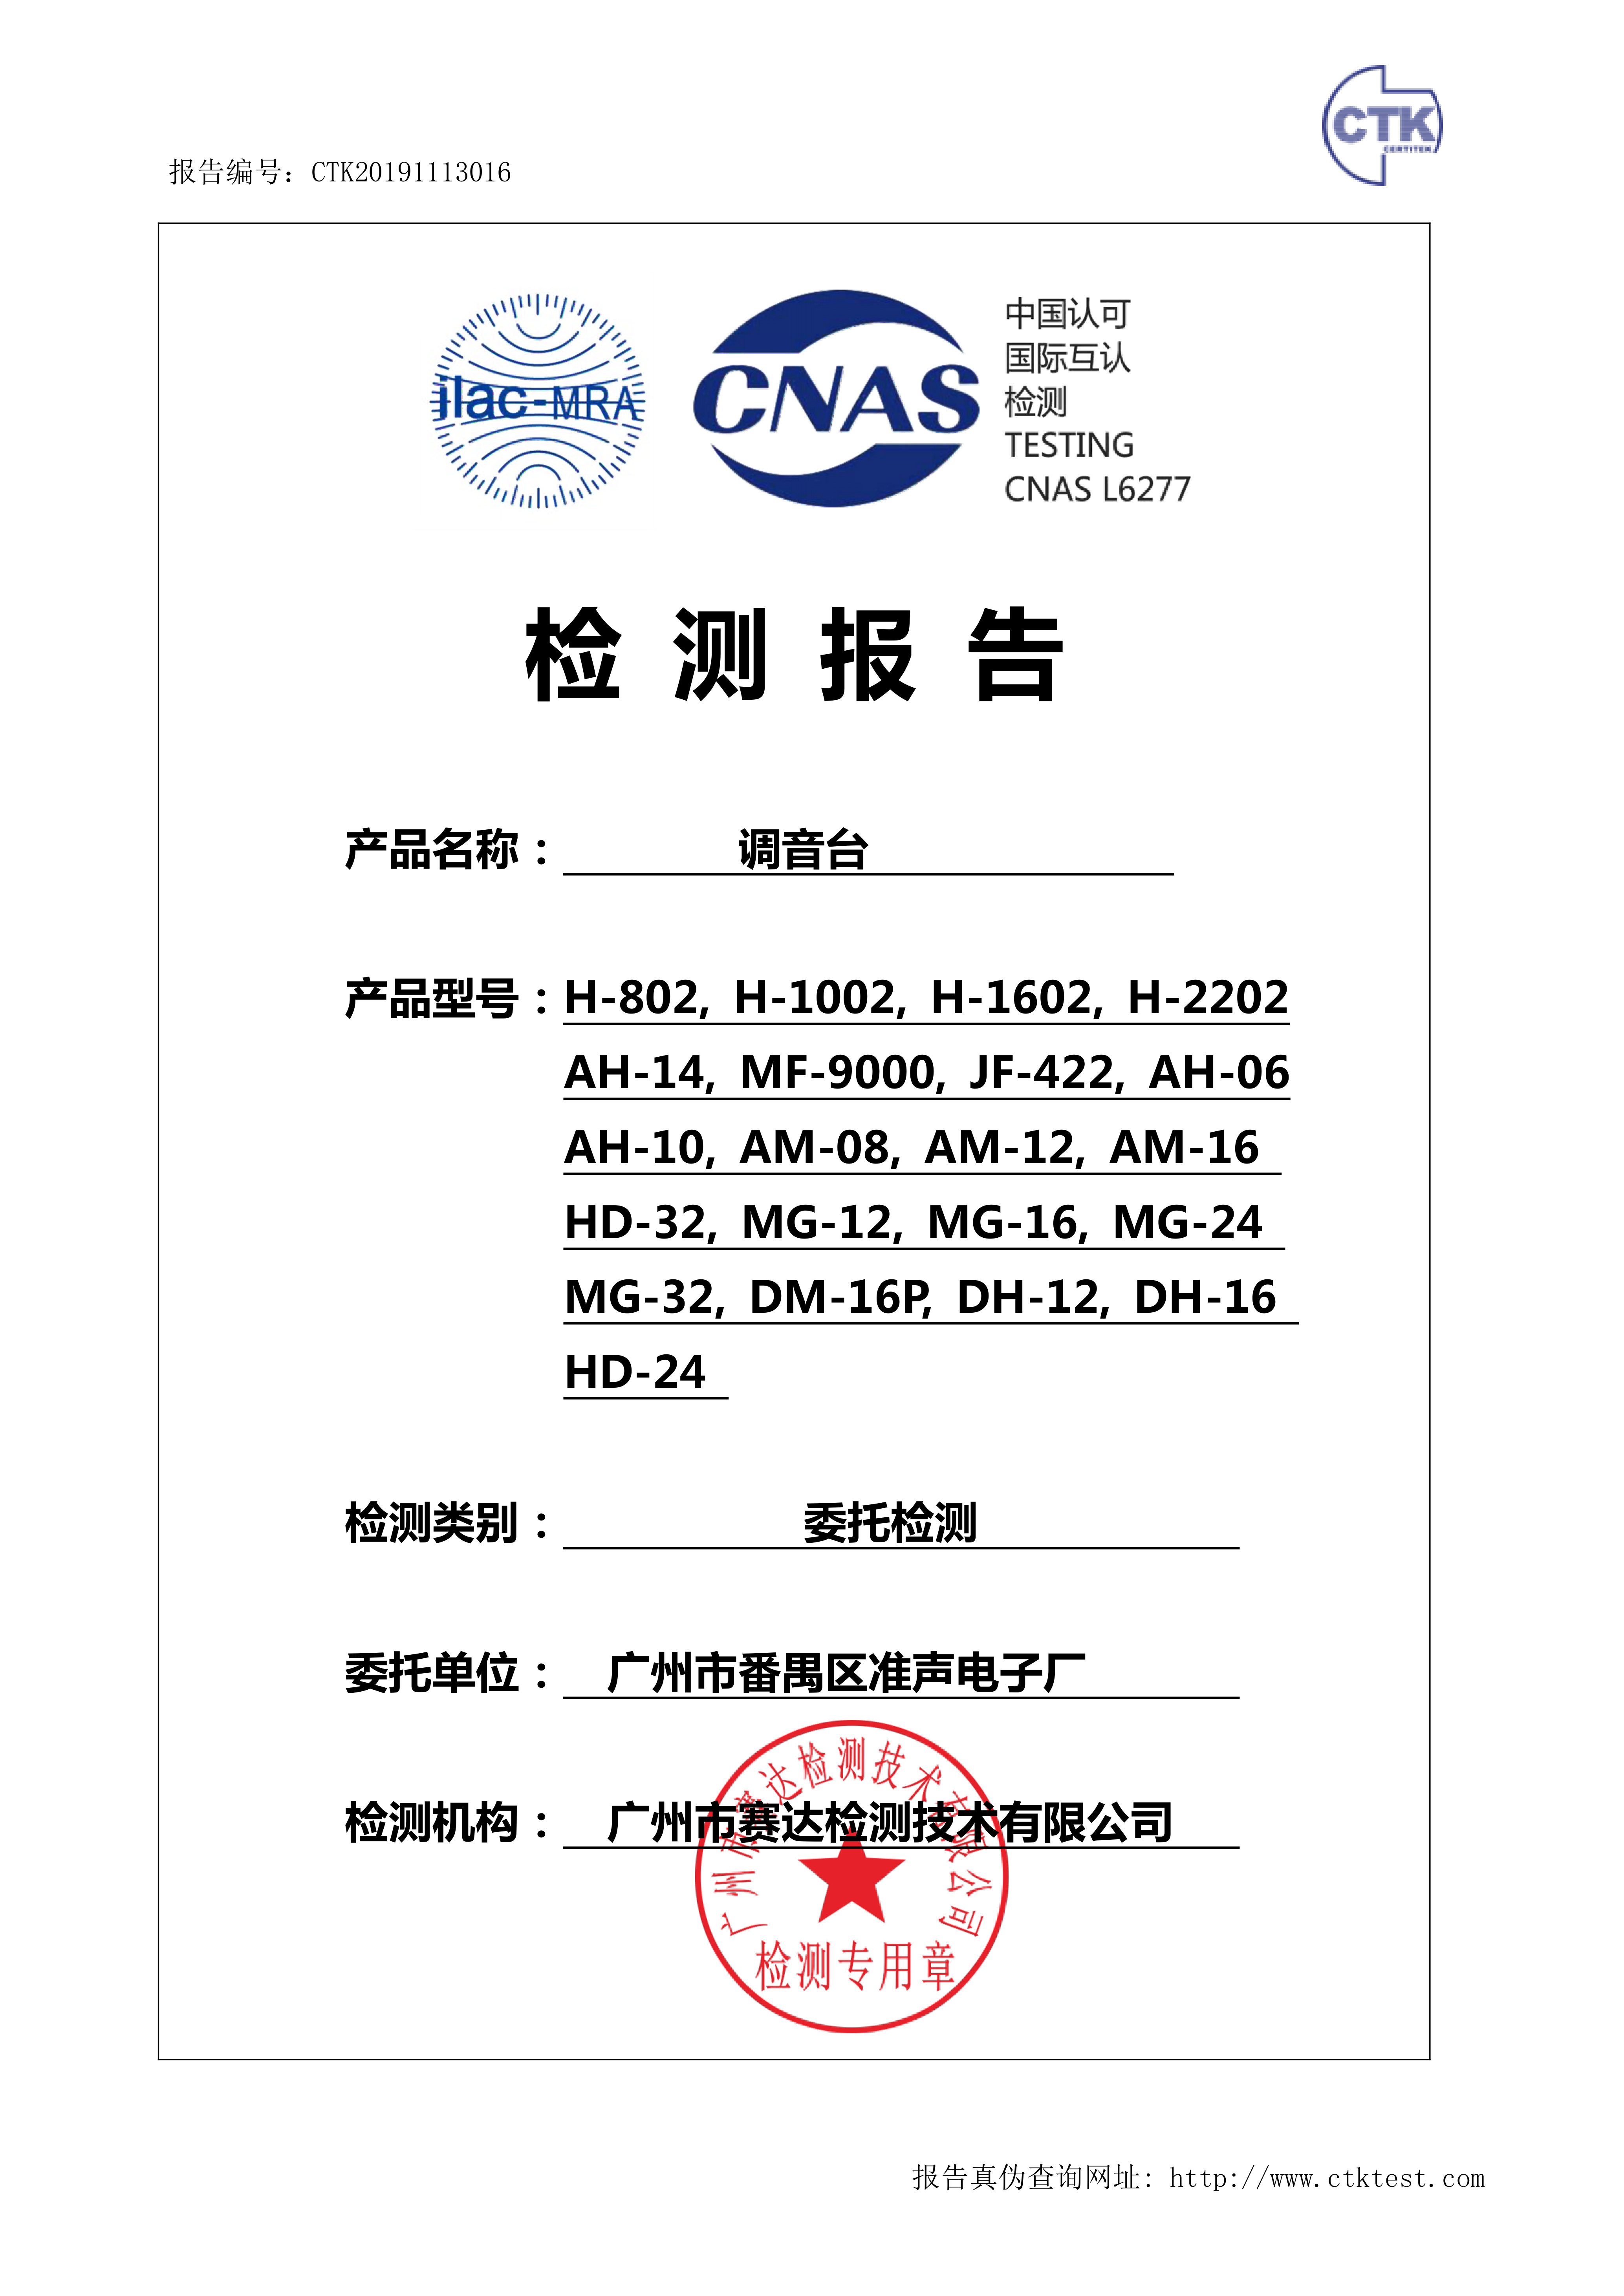 广州市番禺区准声电子厂(AM-16 调音台 CNAS委托测试)-报告_1